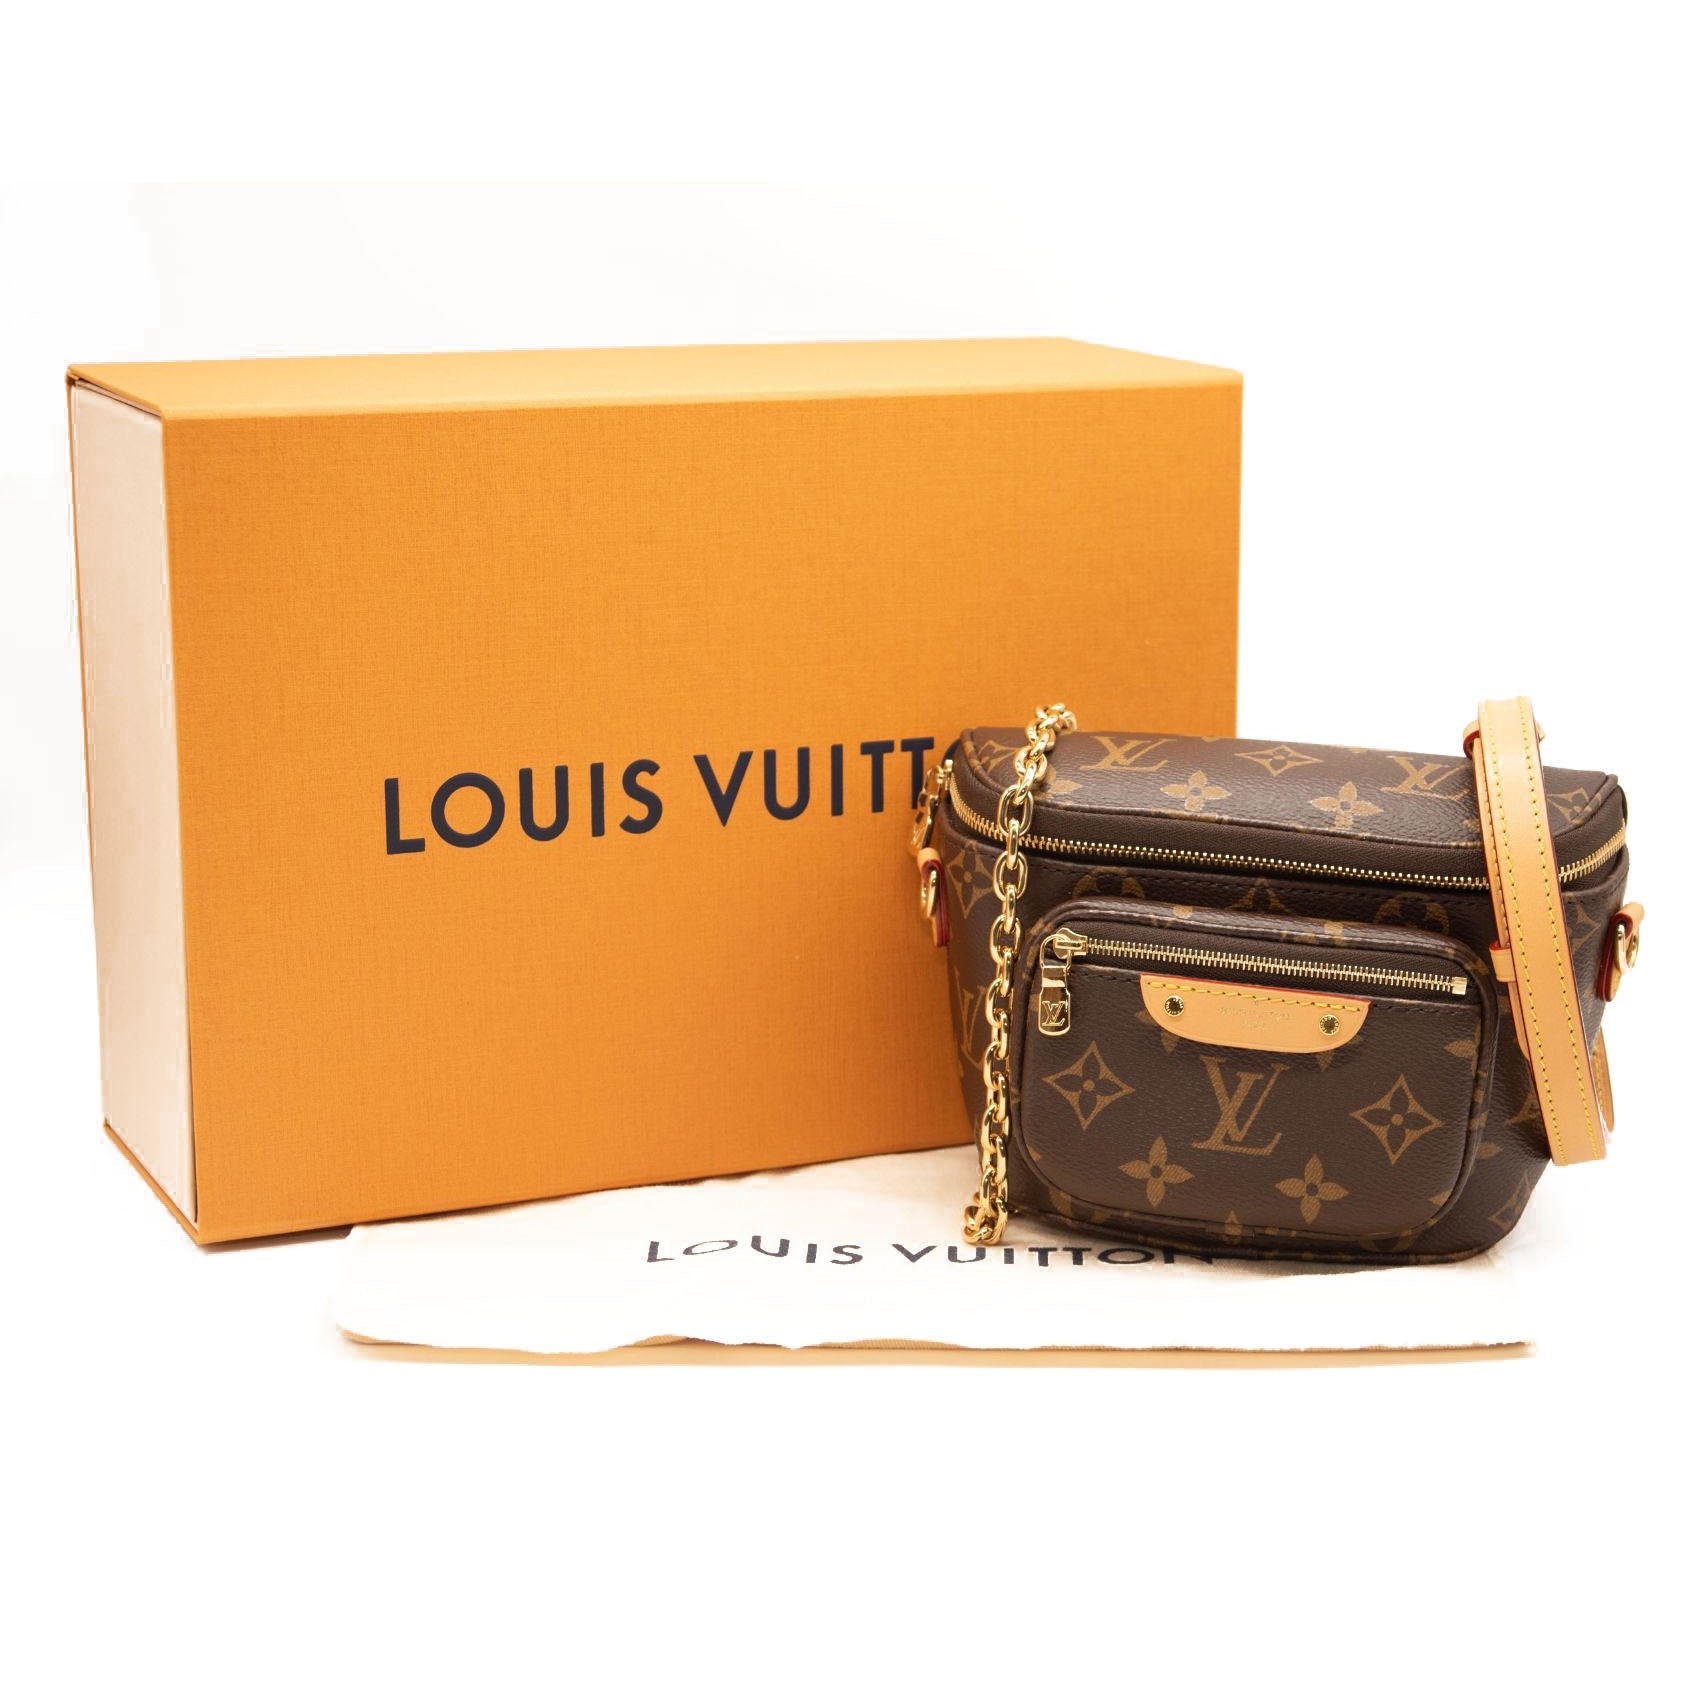 Shop Louis Vuitton Handbags (M82391, M82519, M82487, M82426, M82425) by  lifeisfun